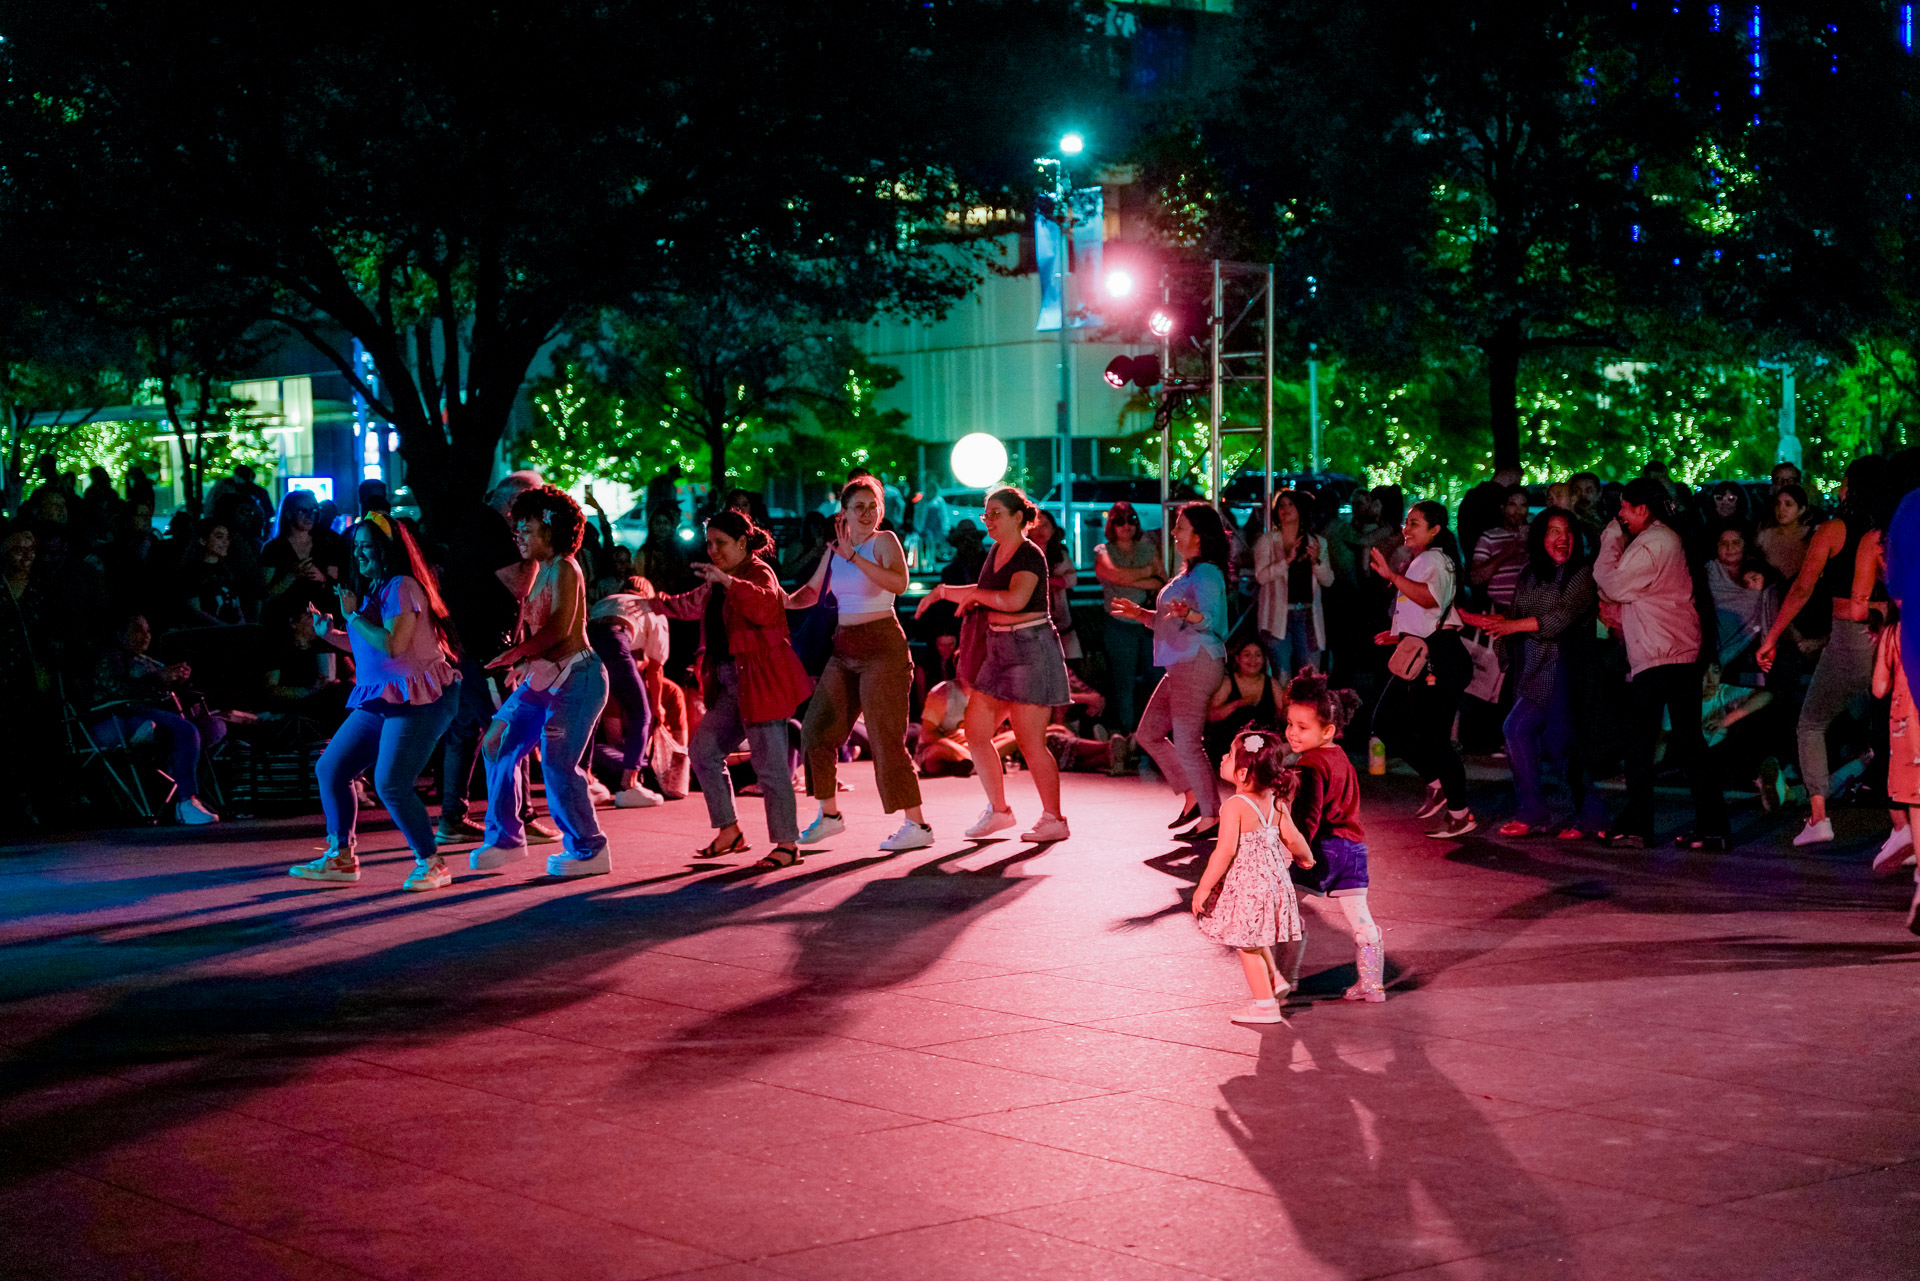 People dancing on an outdoor dance floor